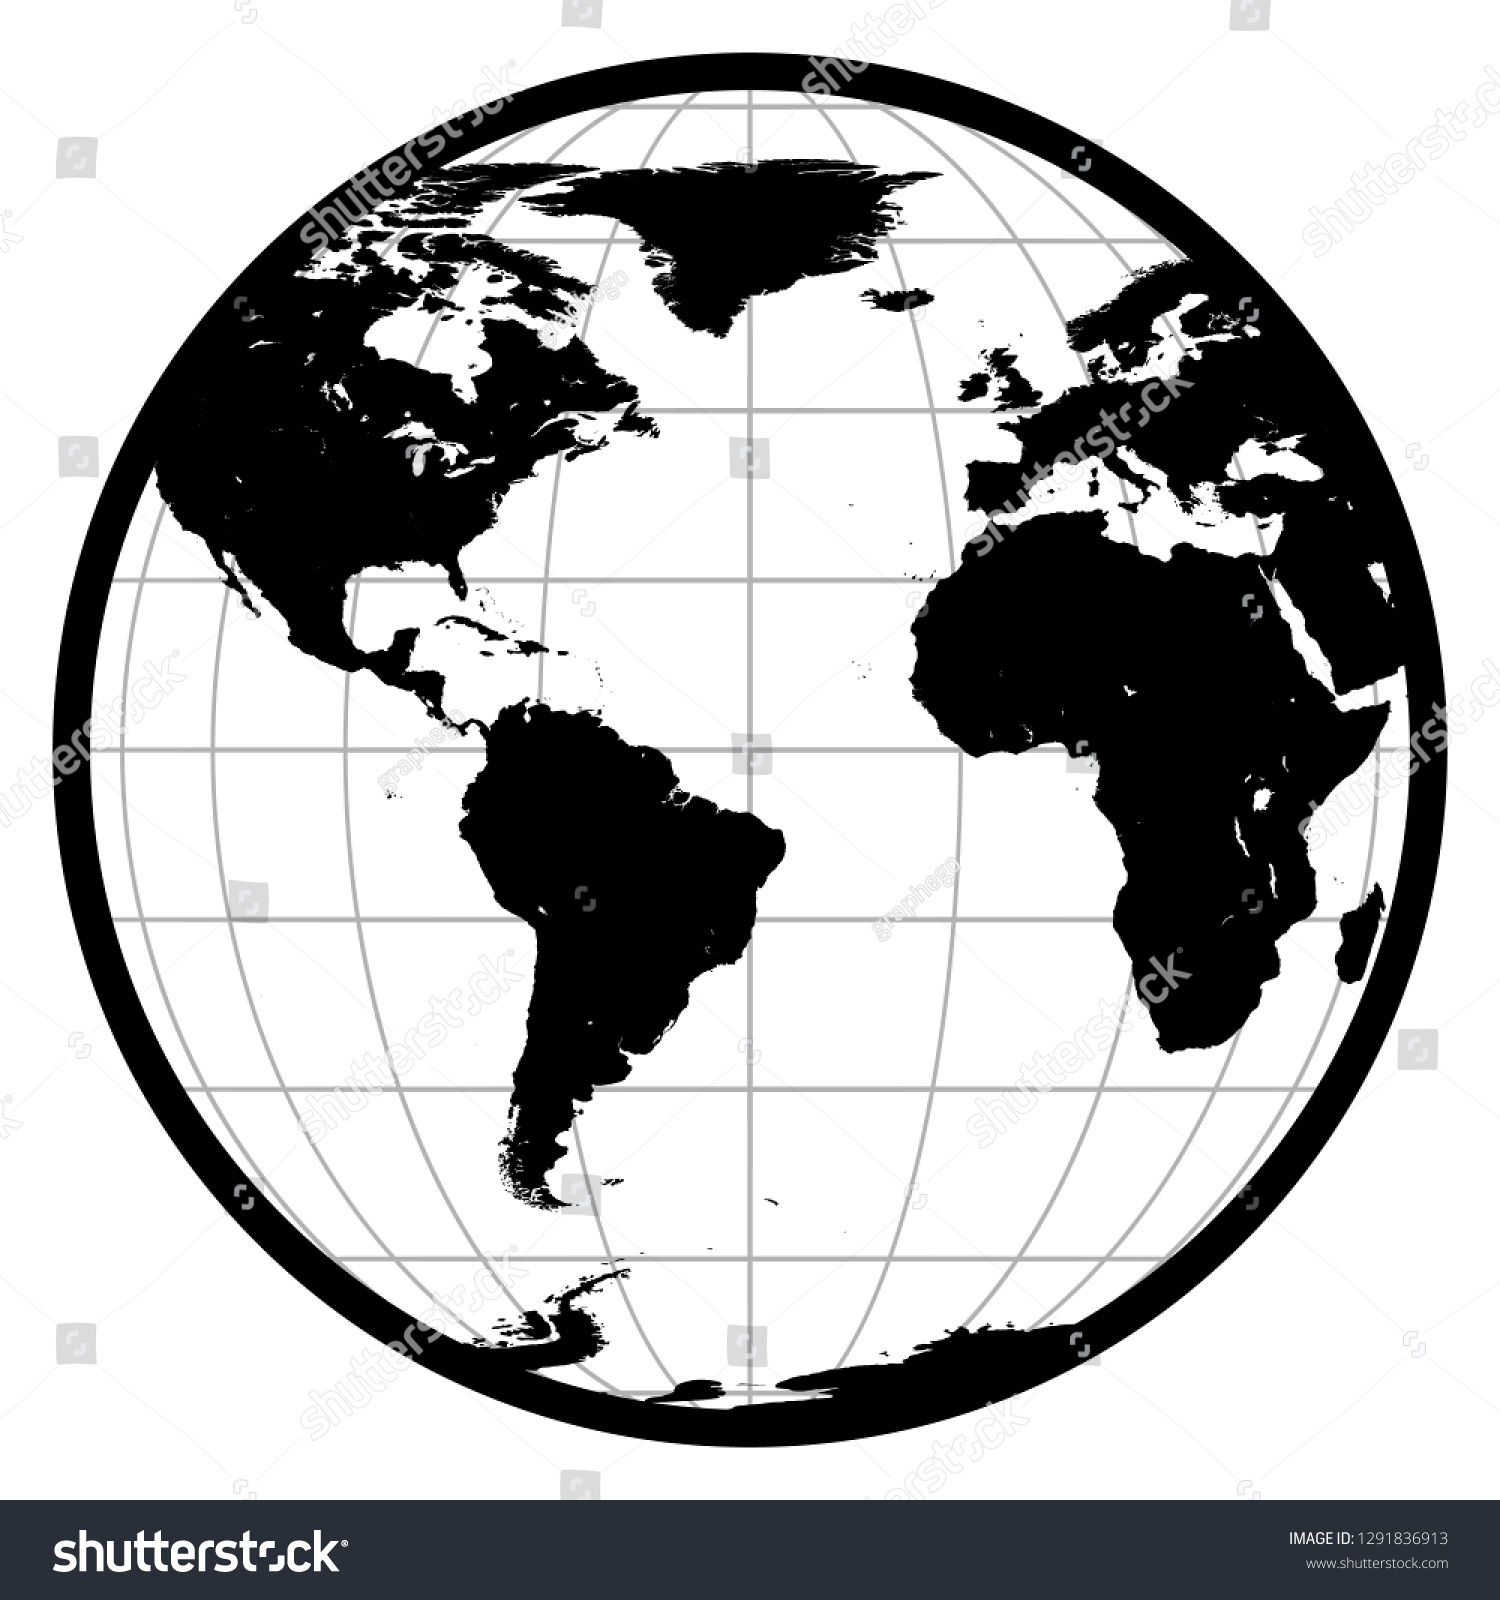 アメリカ アフリカ ヨーロッパの地球儀白い背景に白黒のシルエット地球アイコン イラスト のイラスト素材 Shutterstock